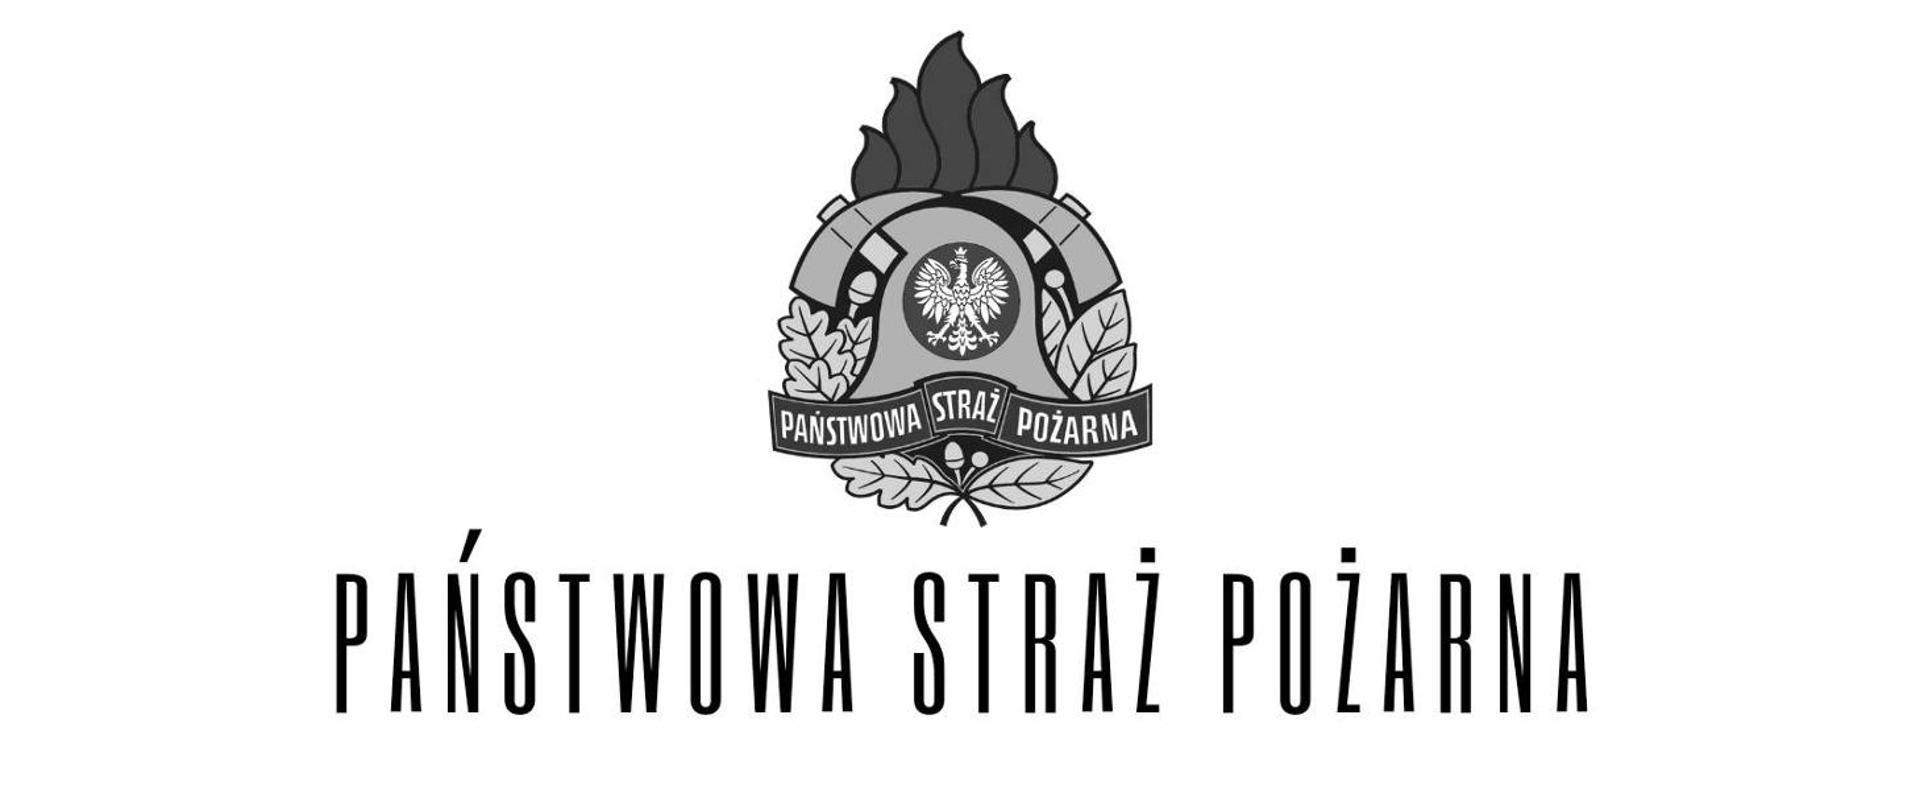 logotyp PSP, w centrum znajduje się godło Państwa Polskiego – Orzeł Biały. Hełm strażacki, który okalają dwa toporki. Całość dopełnia wieniec z liści oraz owoców dębu i wawrzynu.